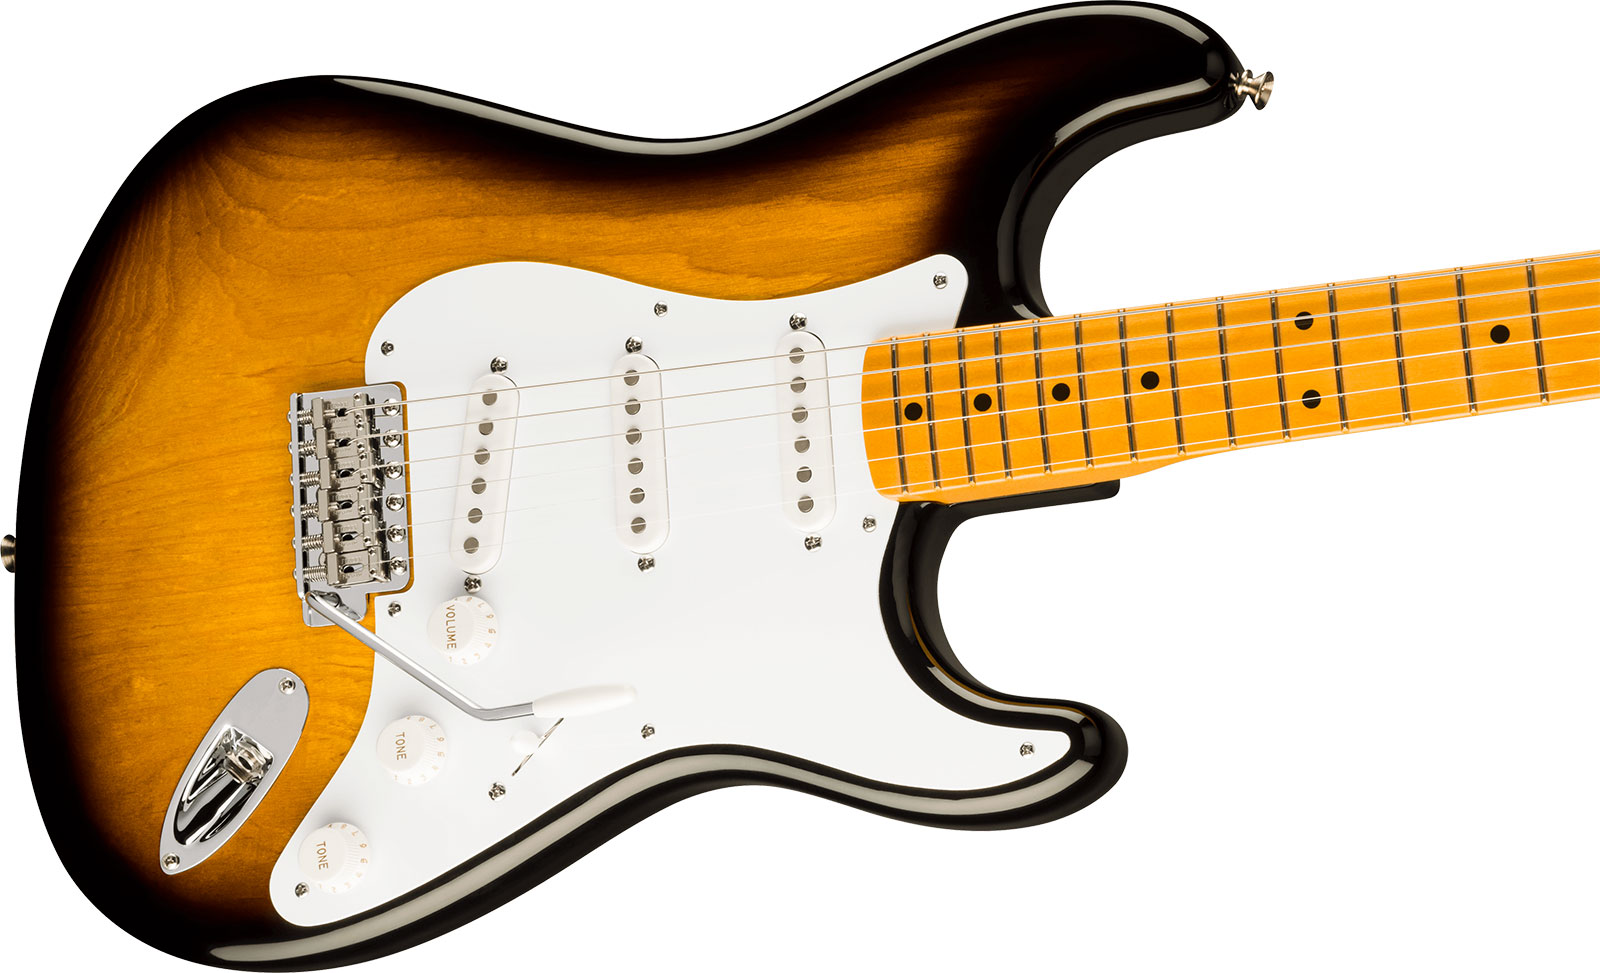 Fender Strat 1954 70th Anniversary American Vintage Ii Ltd Usa 3s Trem Mn - 2-color Sunburst - E-Gitarre in Str-Form - Variation 2